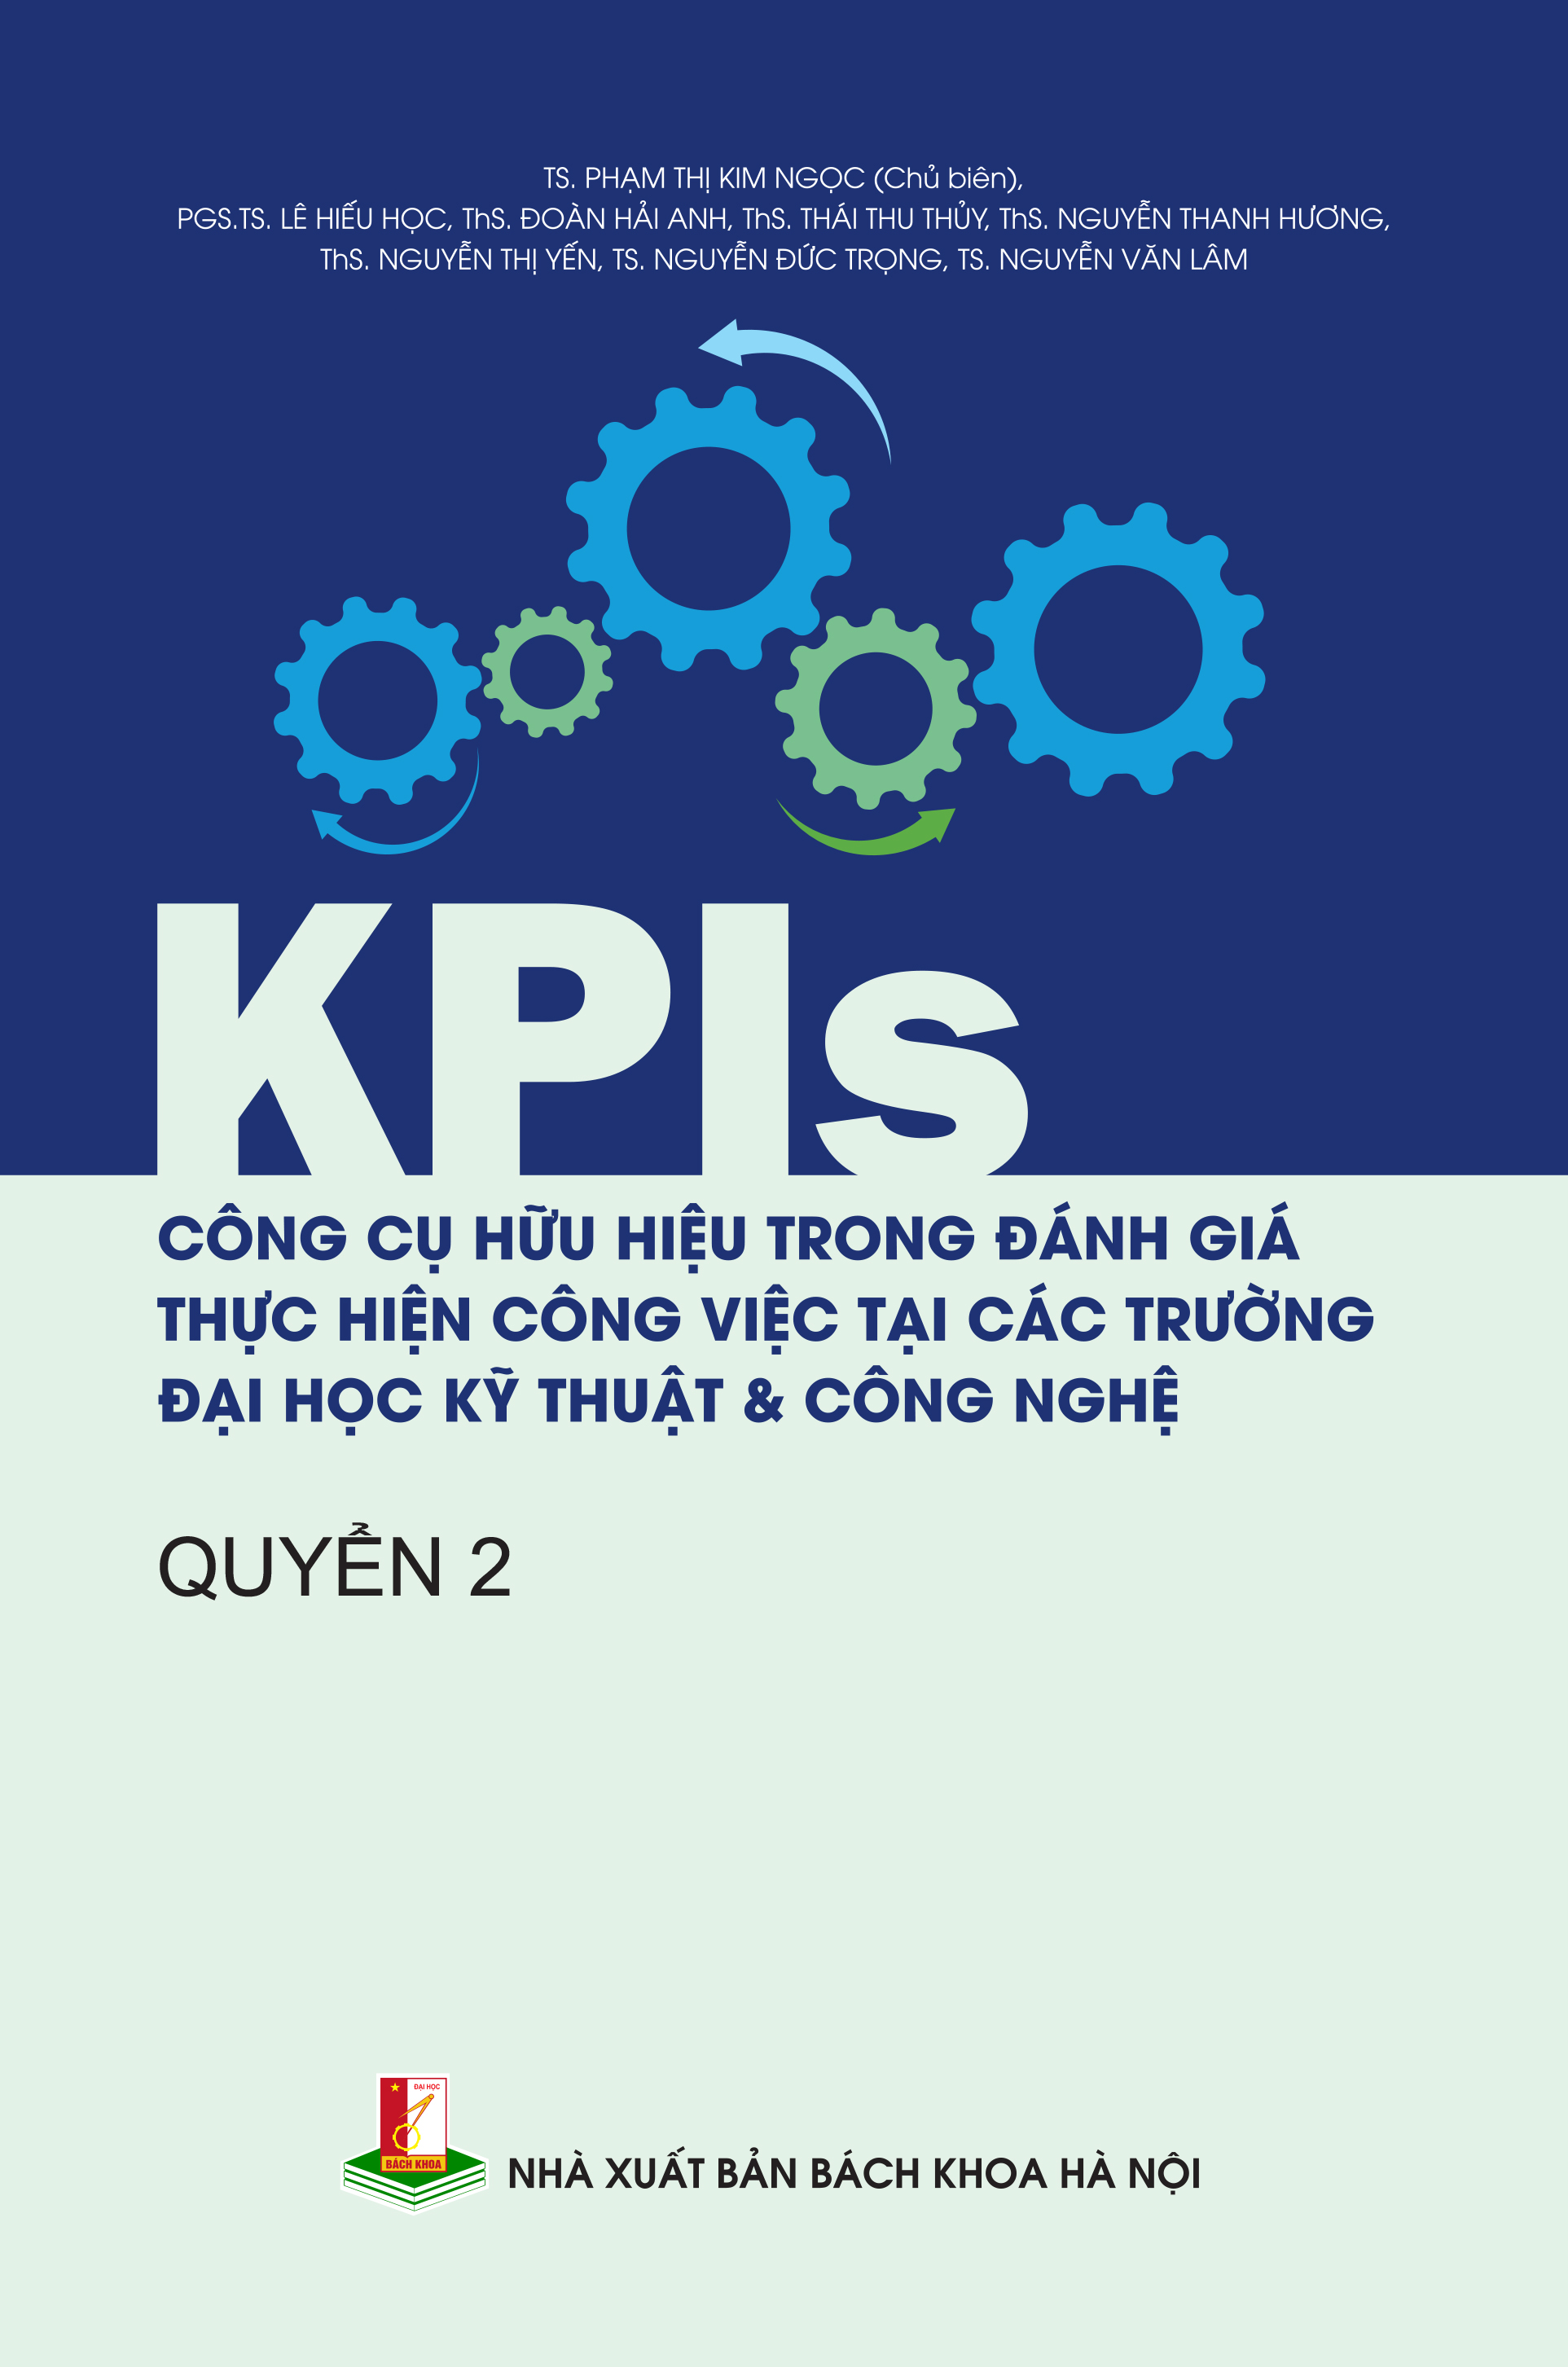 KPIs – Công cụ hữu hiệu trong đánh giá thực hiện công việc tại các trường đại học kỹ thuật & công nghệ Quyển 2